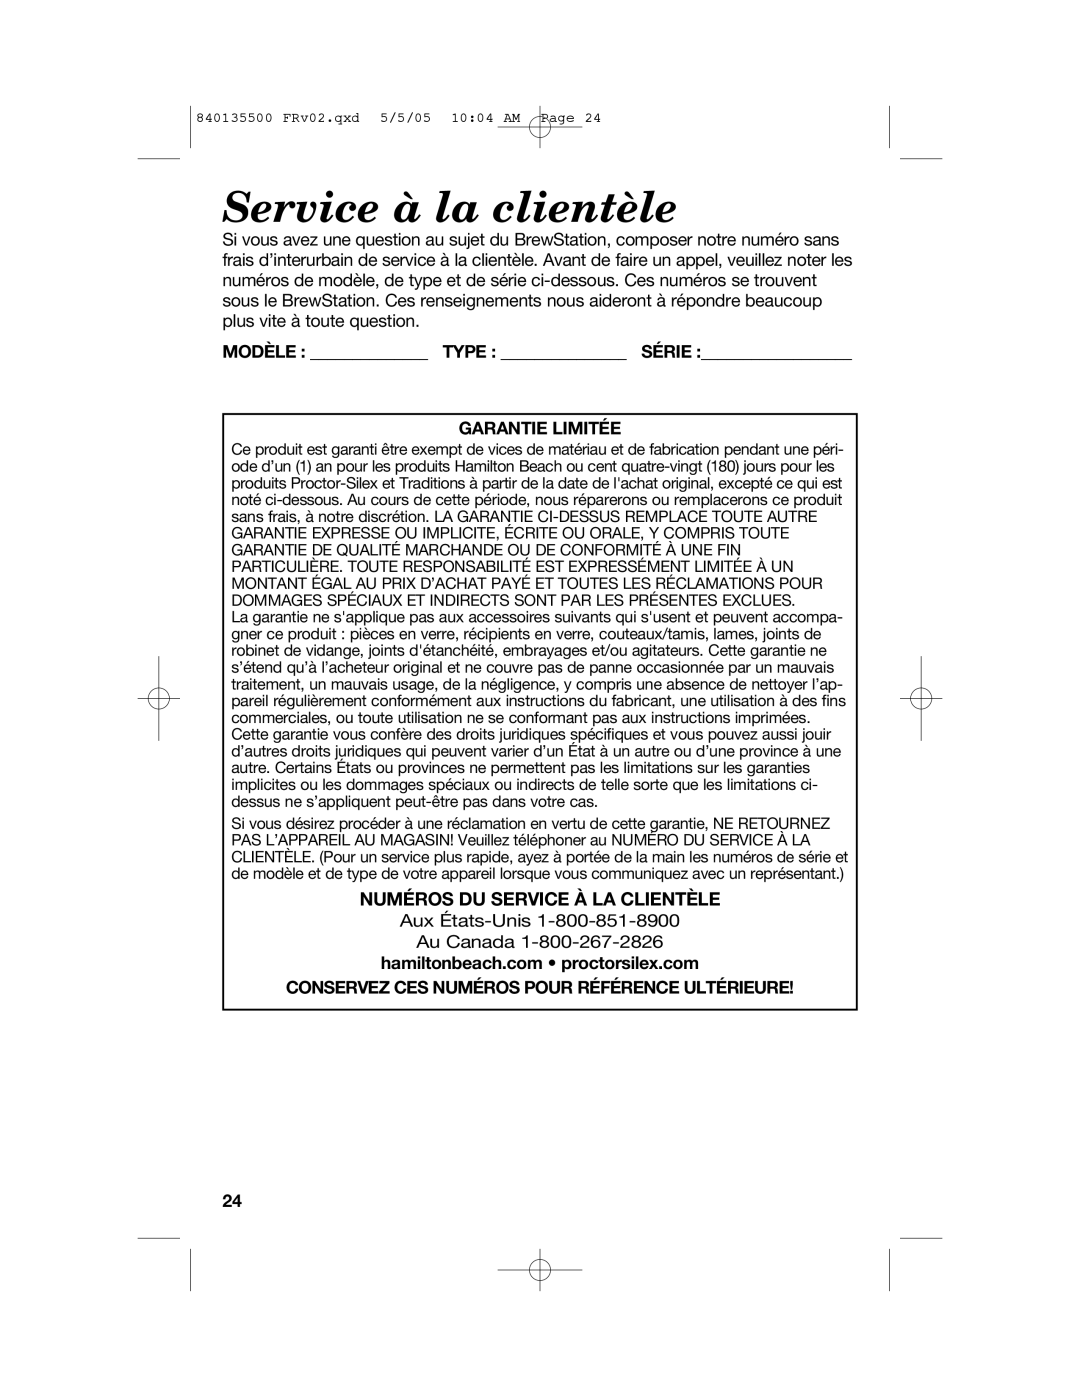 Hamilton Beach 47451 manual Service à la clientèle, Numéros Du Service À La Clientèle, Modèle Type Série Garantie Limitée 